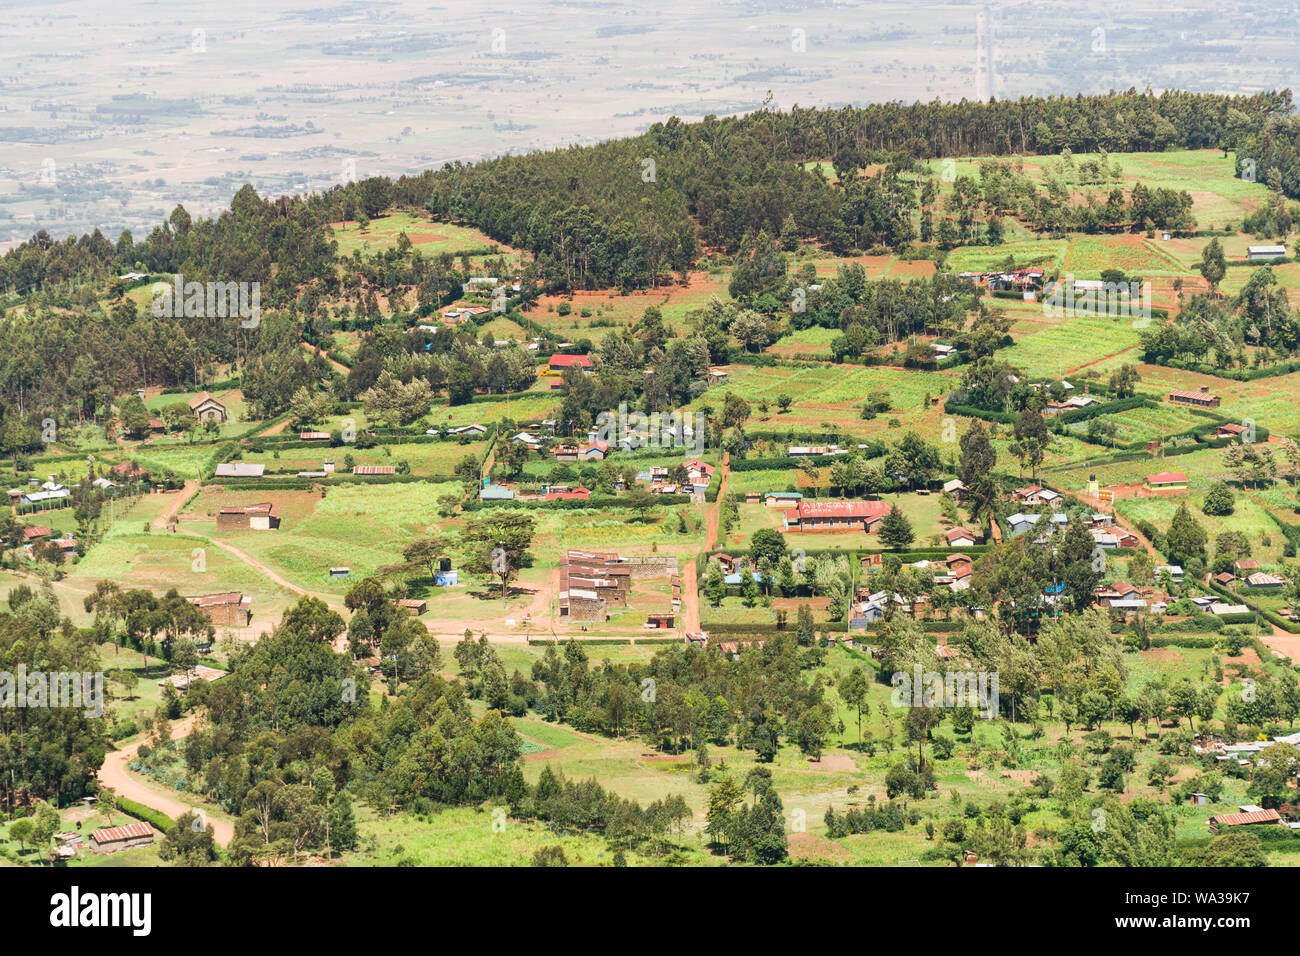 Vista elevada de hogares, granjas y edificios en el Valle del Rift, Kenia Foto de stock